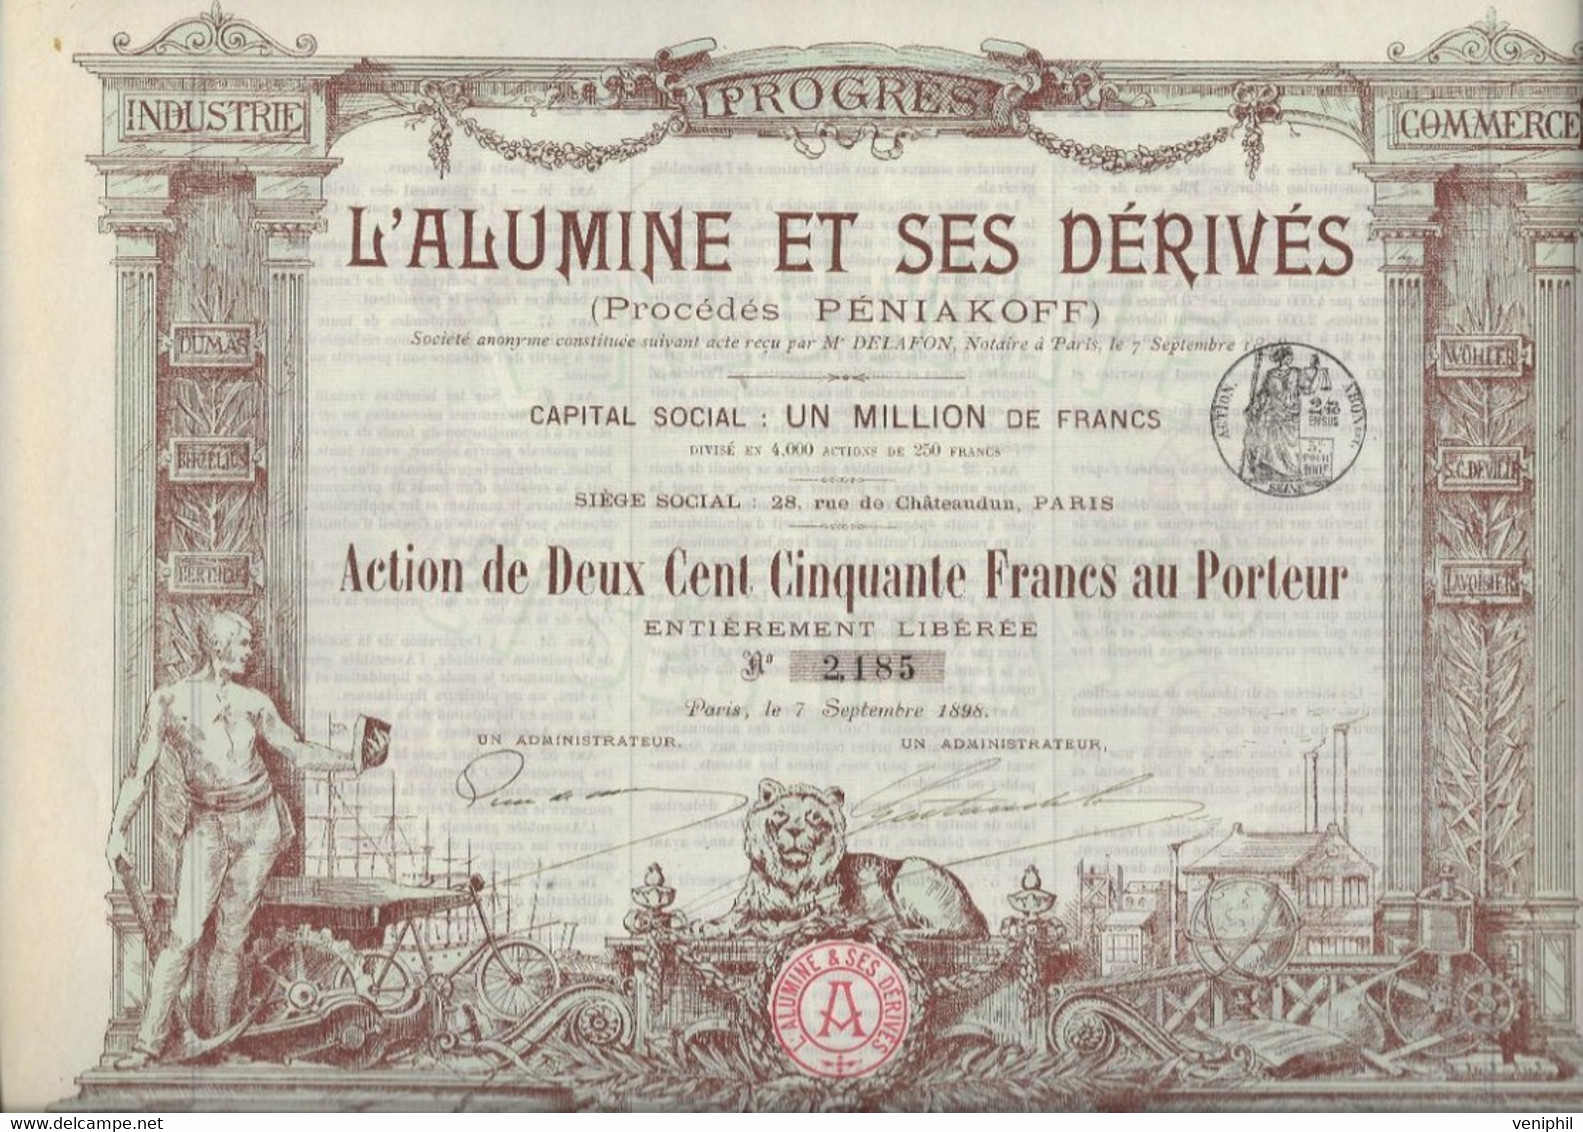 L'ALUMINE ET SES DERIVES -PROCEDE PENIAKOFF - DIVISE EN 4000 ACTIONS DE DEUX CENT CINQUANTE FRANCS -ANNEE 1898 - Miniere